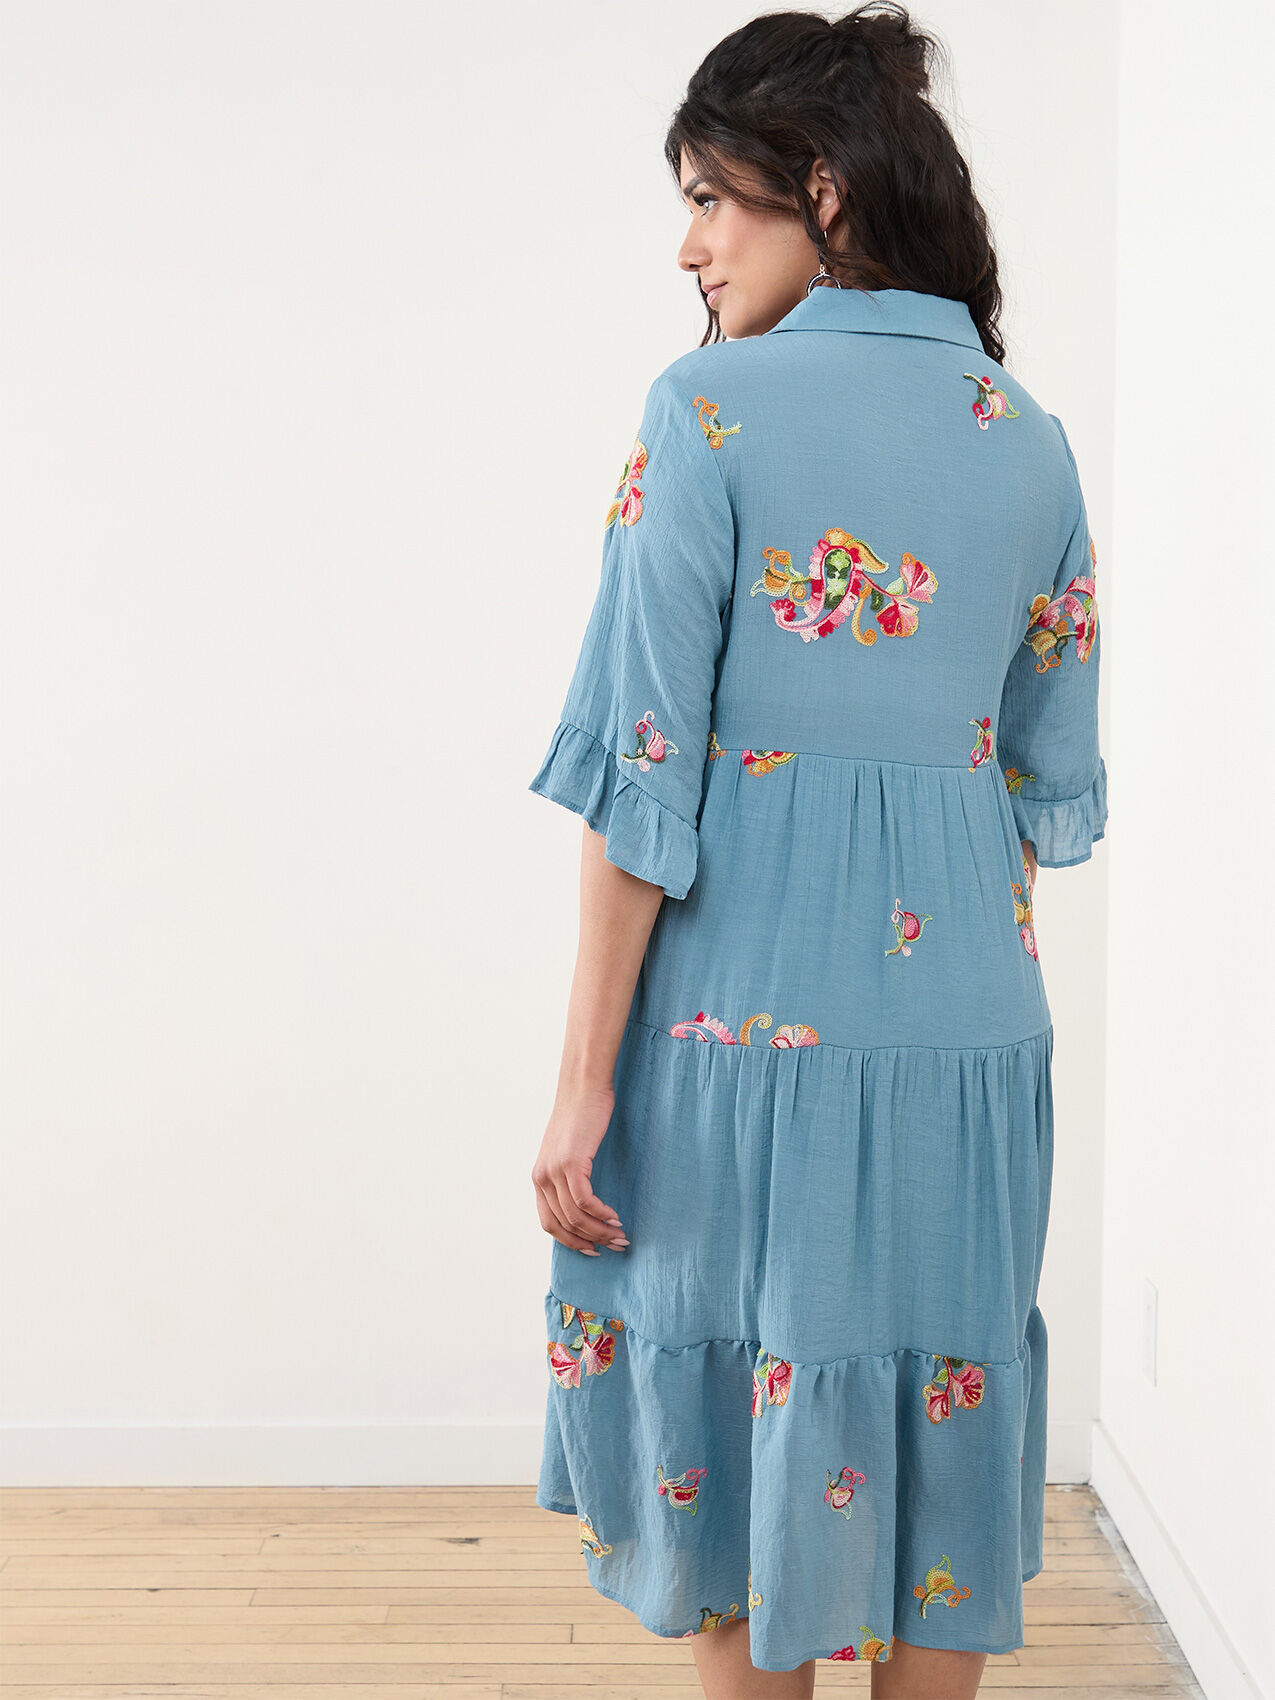 Petite Blue & Floral Gauze Dress